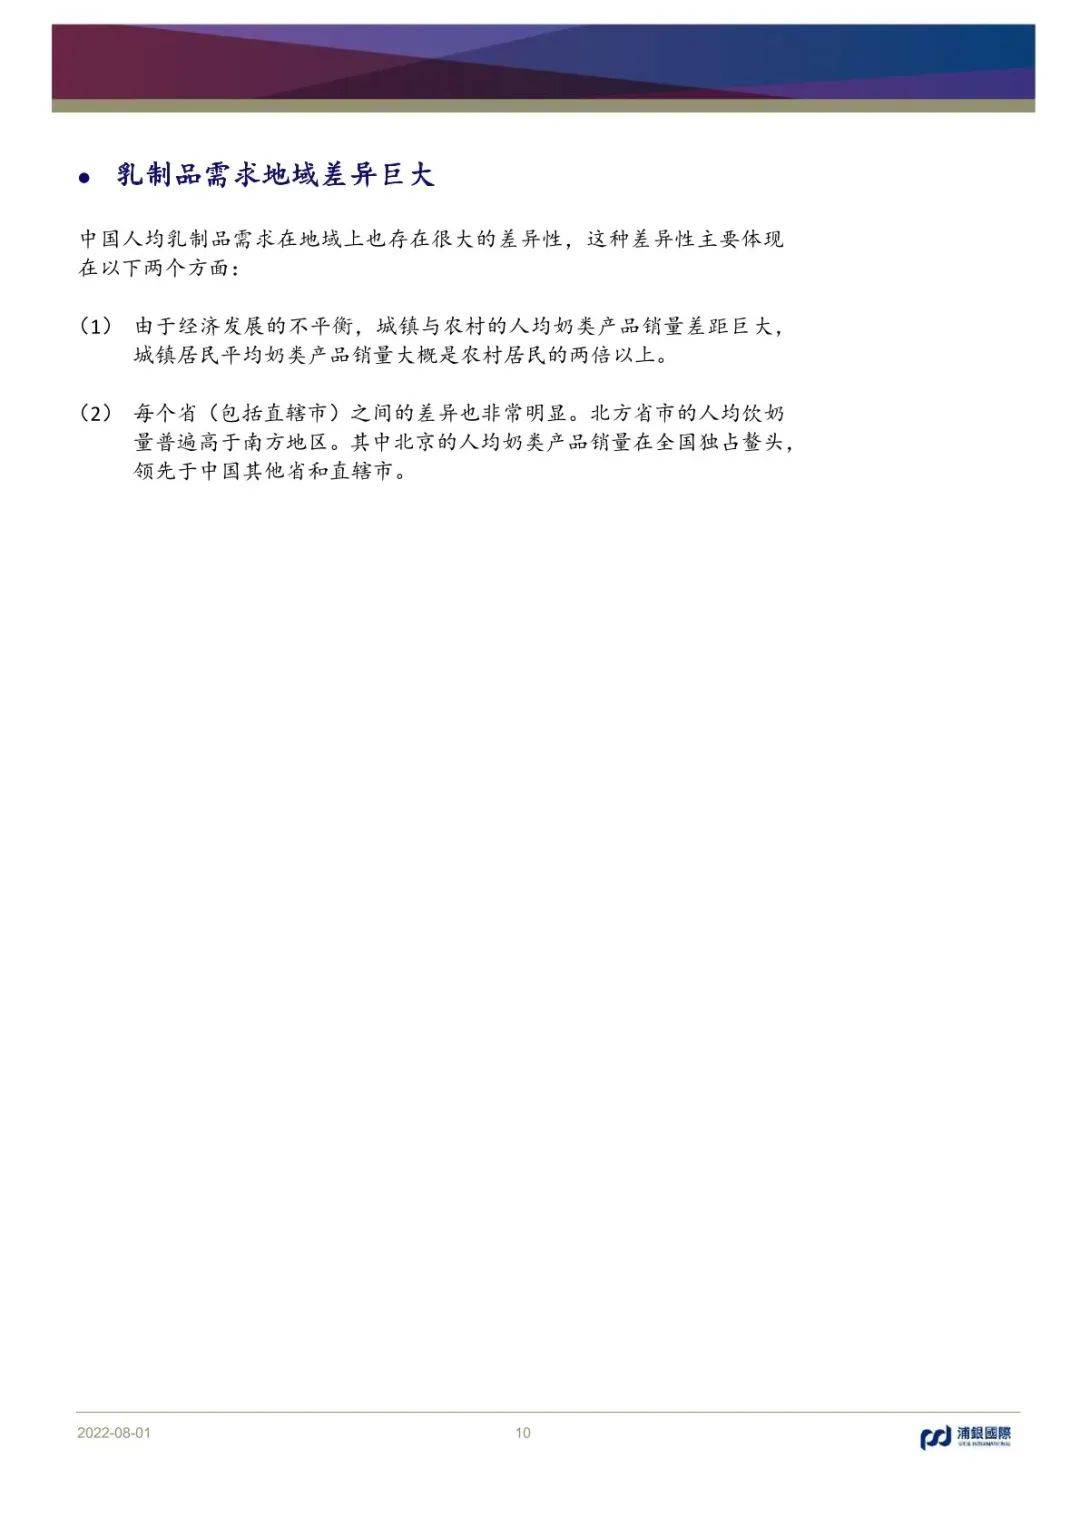 中国乳制品行业深度研究-278页（光明乳业、中国飞鹤、澳优乳业、妙可蓝多等）